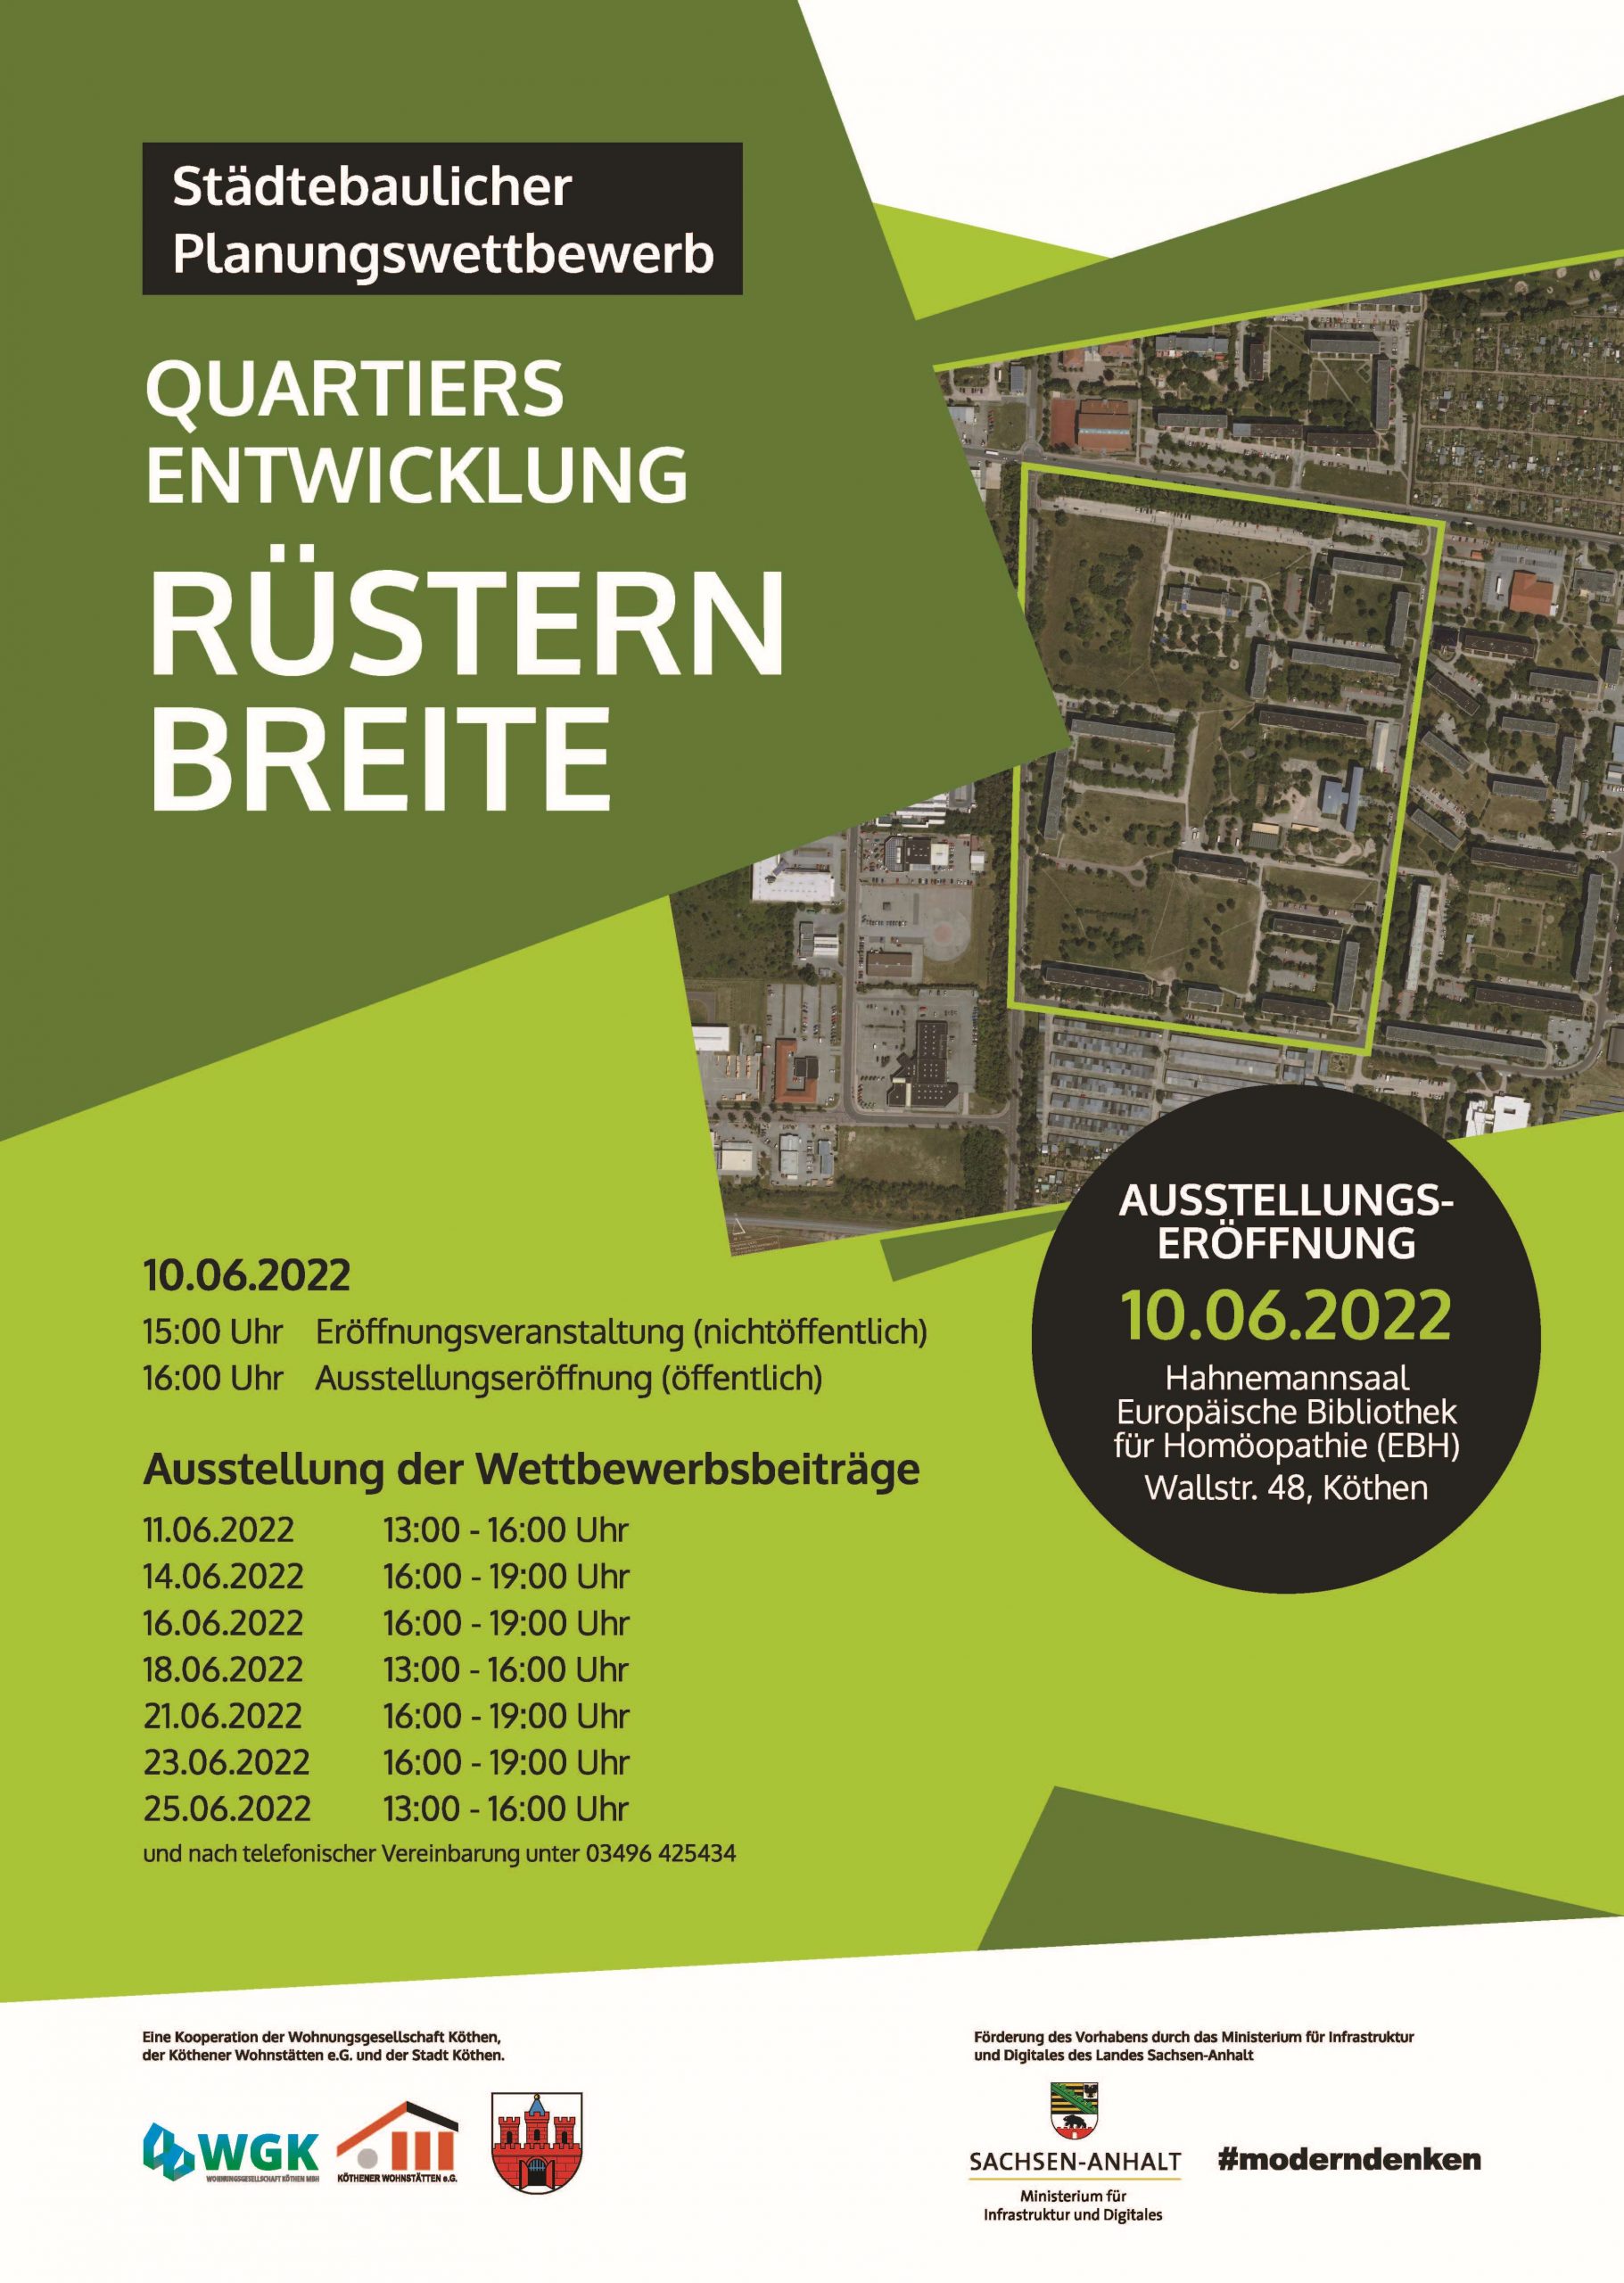 Plakat zum städtebaulichen Planungswettbewerb mit den Öffnungszeiten der Ausstellung